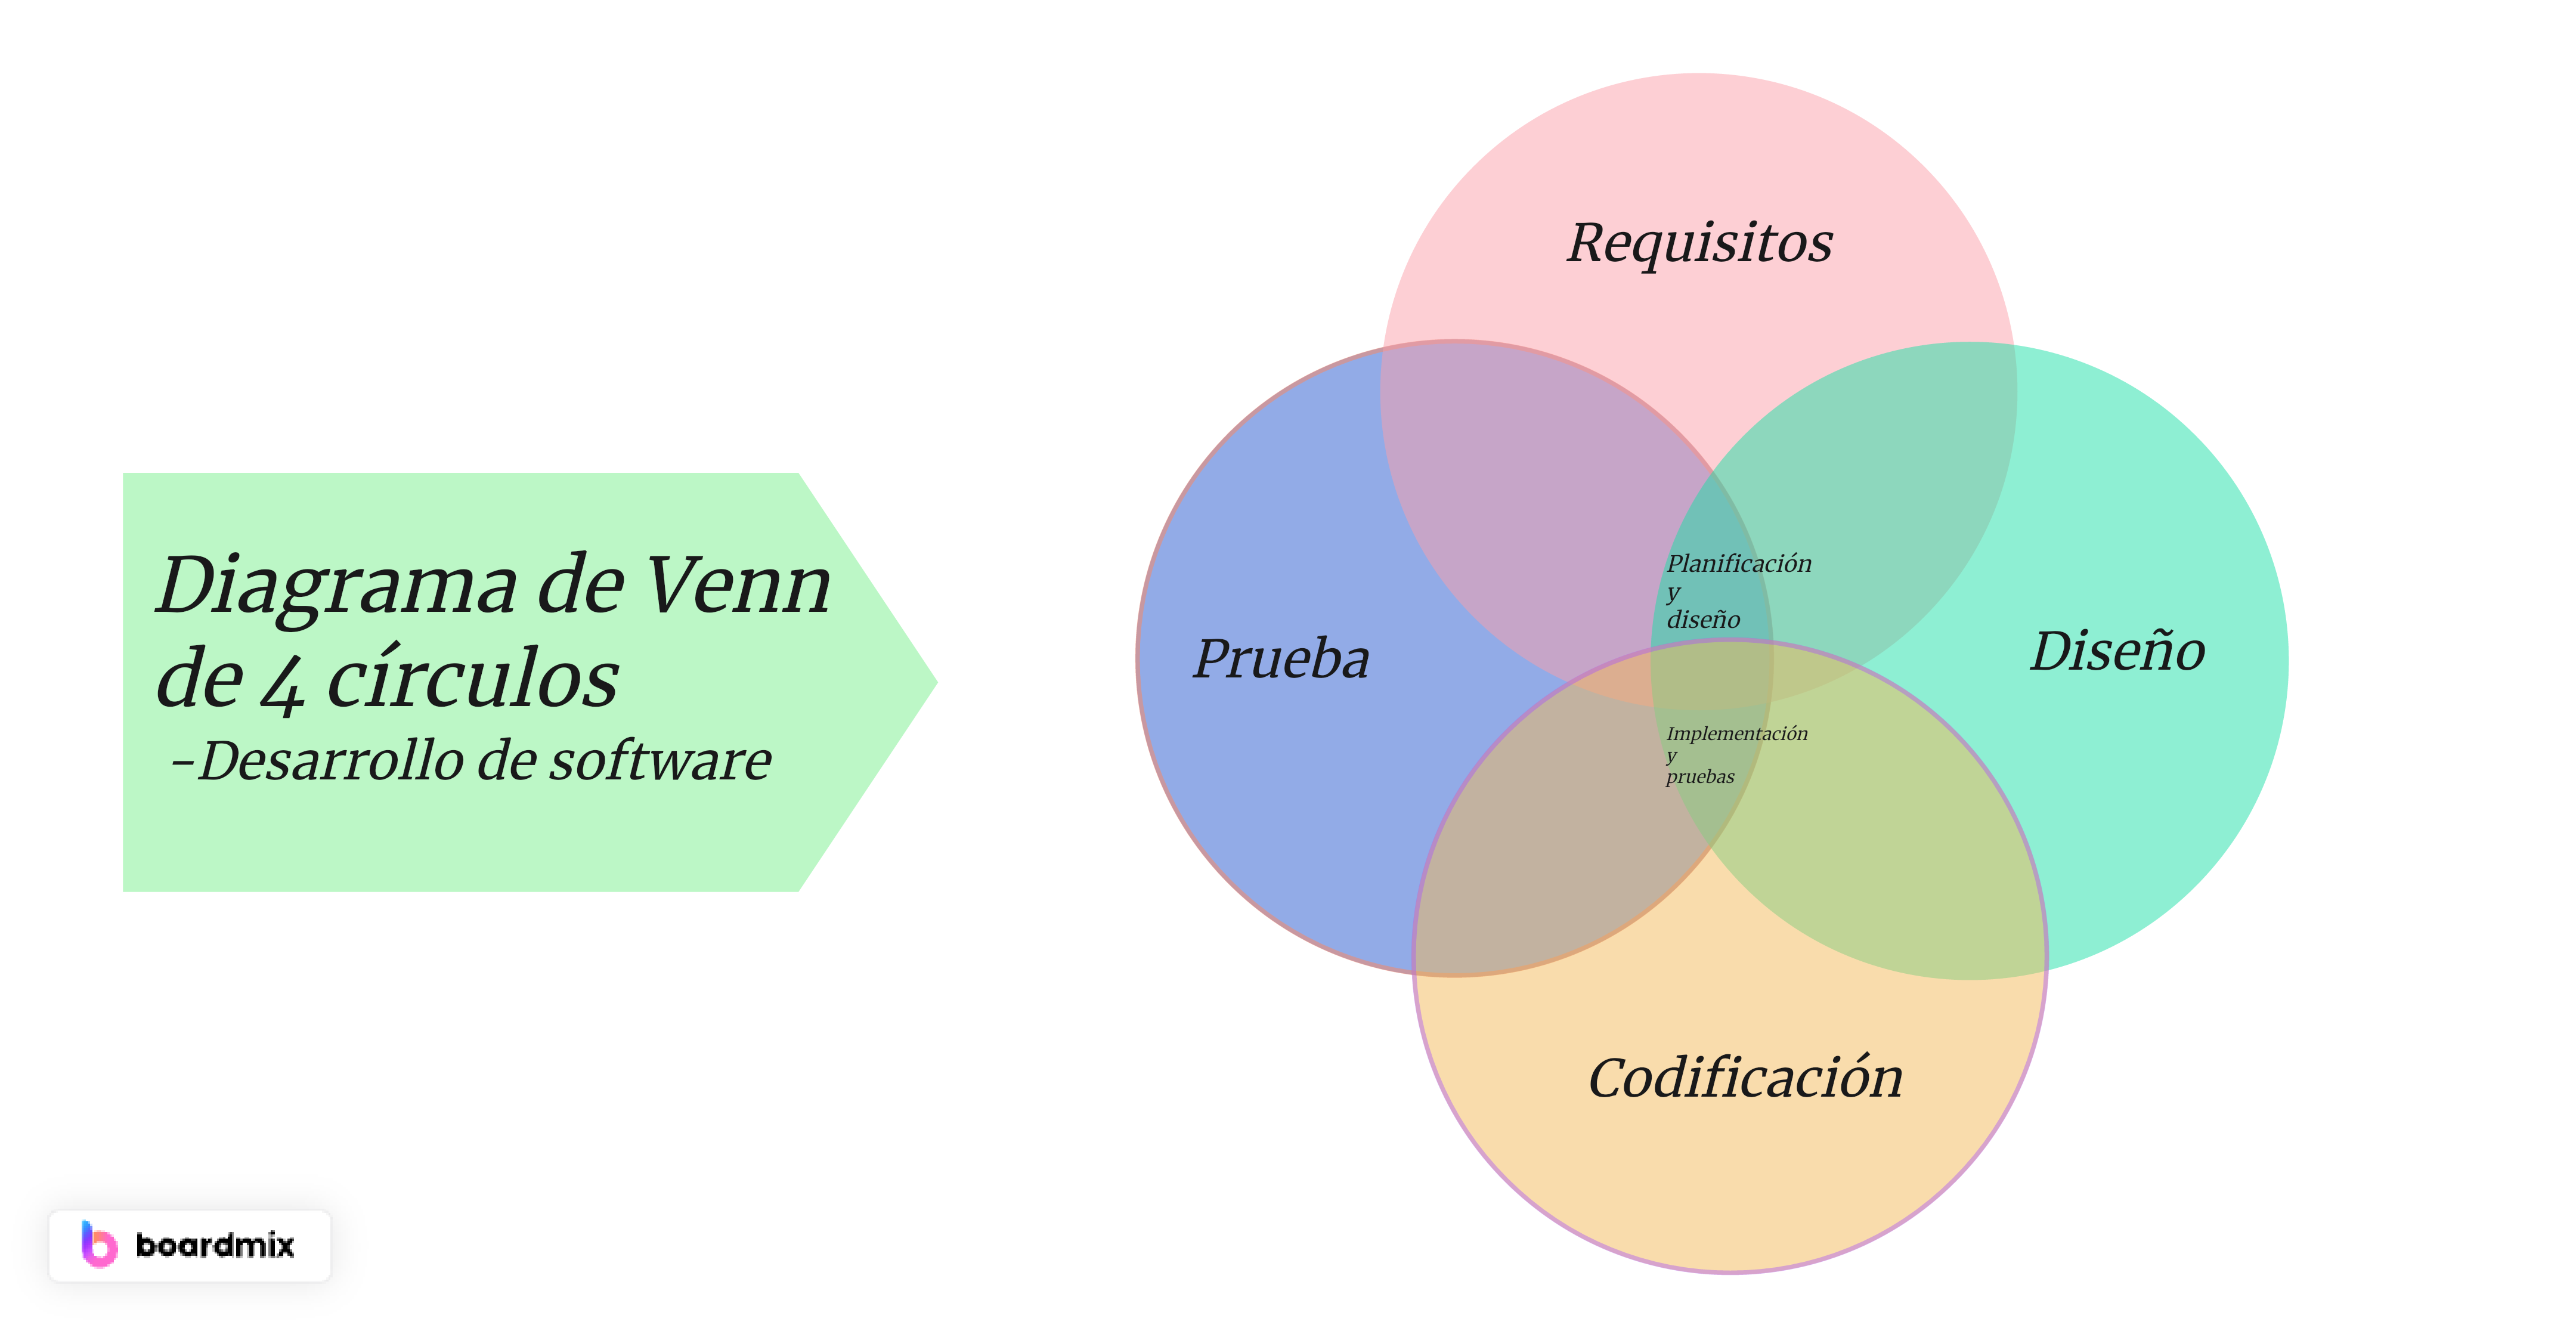  Diagrama de Venn de 4 círculos en el desarrollo de software